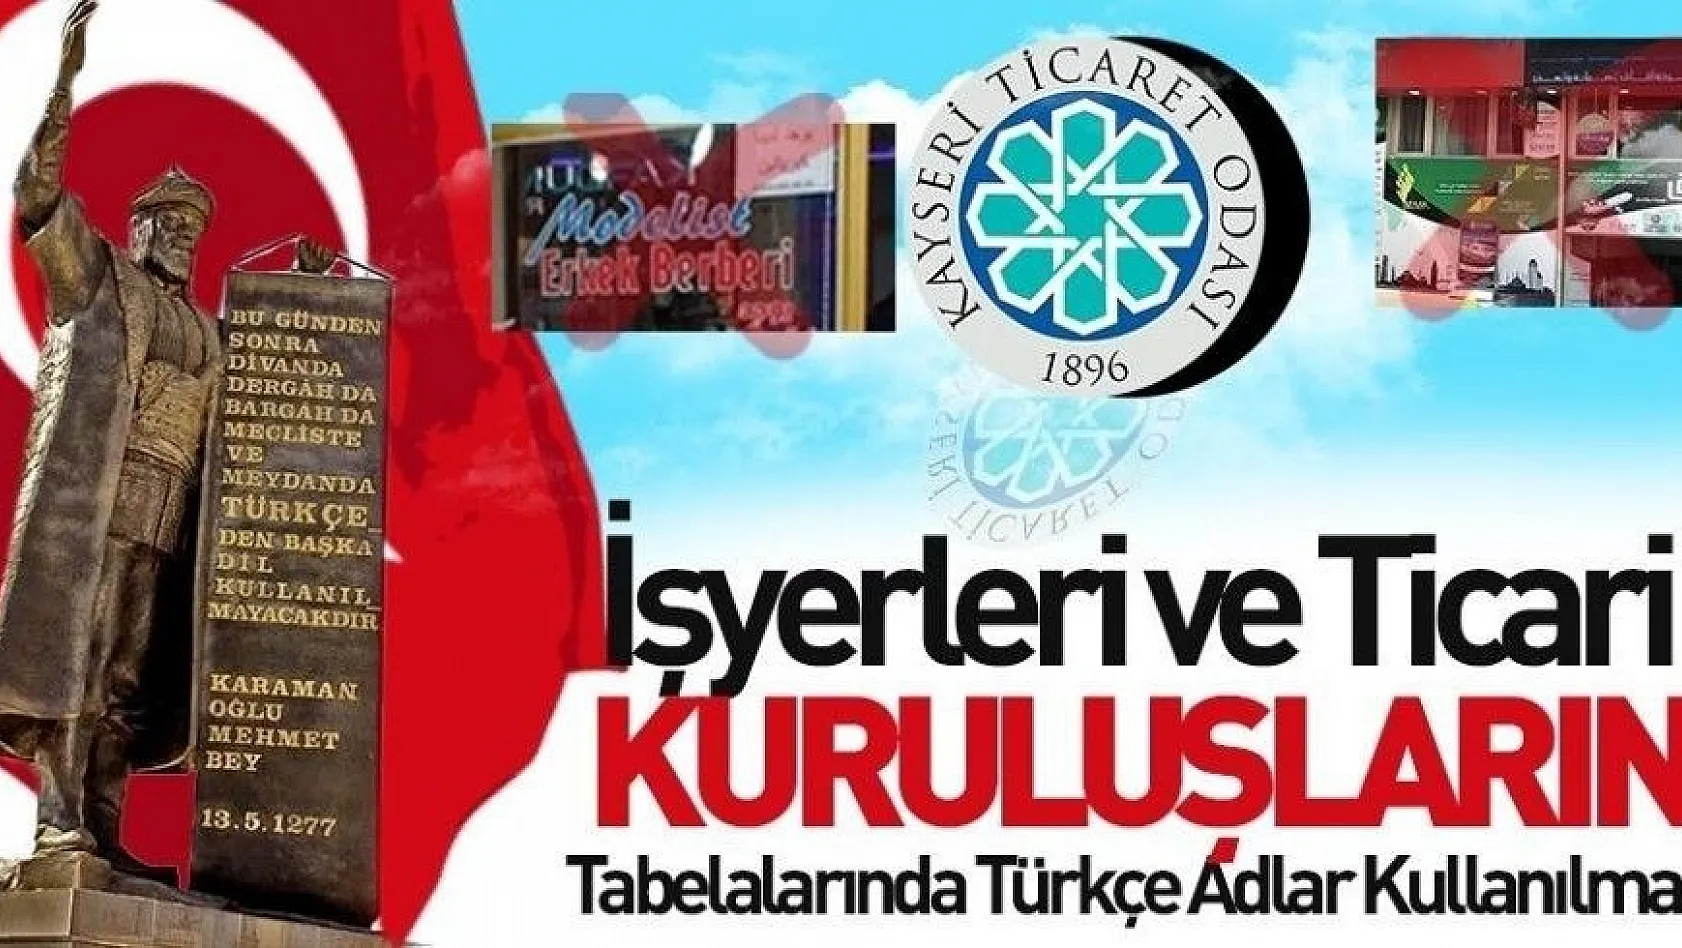 Gülsoy: İşyerleri ve ticari kuruluşların tabelalarında Türkçe adlar kullanılmalı